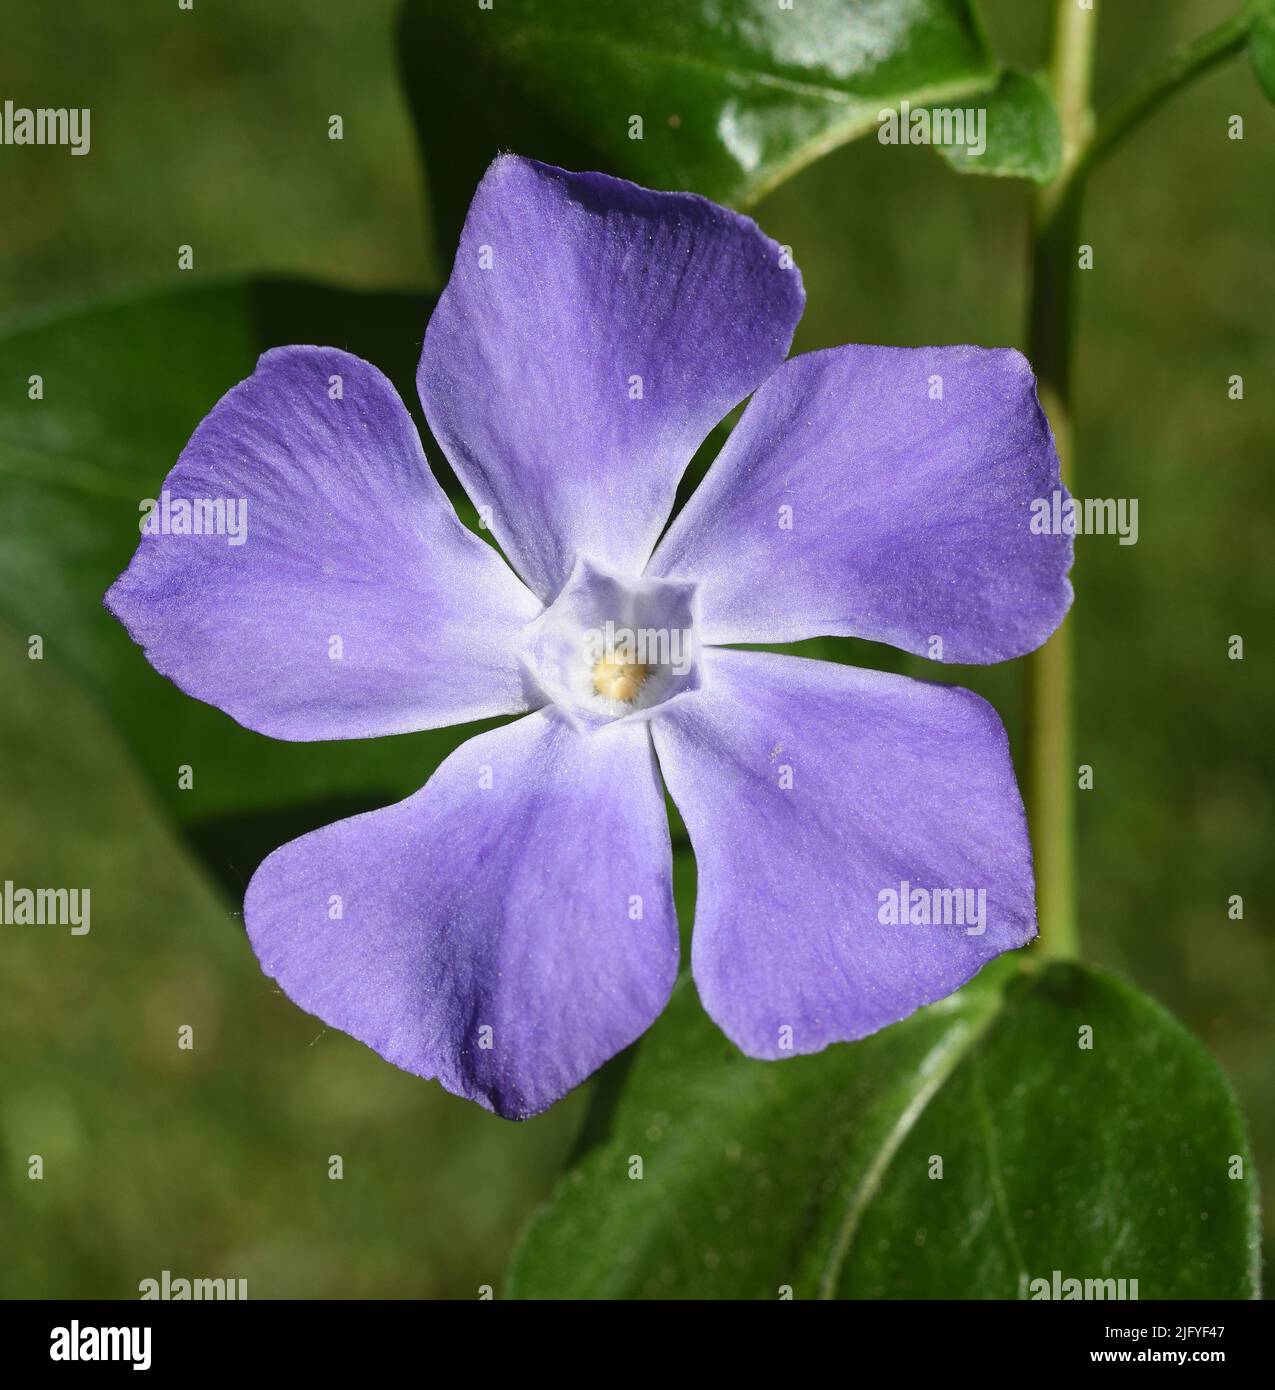 Immergruen, Vinca major, ist eine wichtige Heilpflanze mit blauen  Blueten und wird auch als Bodendecker verwendet. Periwinkle, Vinca major, is an imp Stock Photo